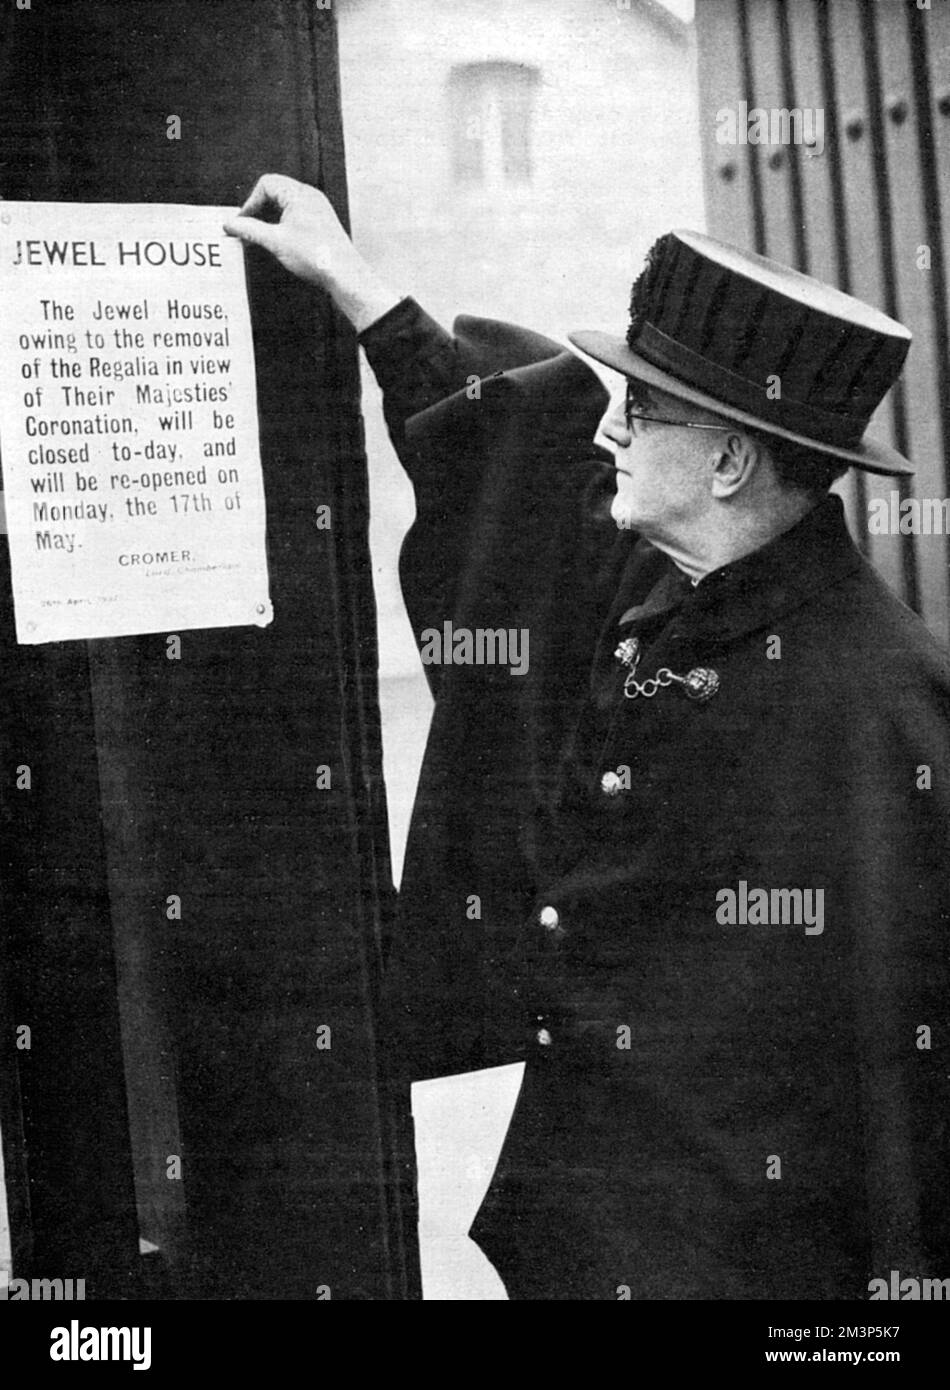 Ein Aufseher aus Yeoman, der Lord Chamberlains Kündigung auf dem Wakefield Tower im Tower of London festklebt und ankündigt, dass der Ort aufgrund der Entfernung der Regalia bis Mai 17 geschlossen sein wird. Vor der Krönung wurden die Juwelen bei den Juwelieren Garrard aufbewahrt, wo sie dekoriert wurden. Datum: 1937 Stockfoto